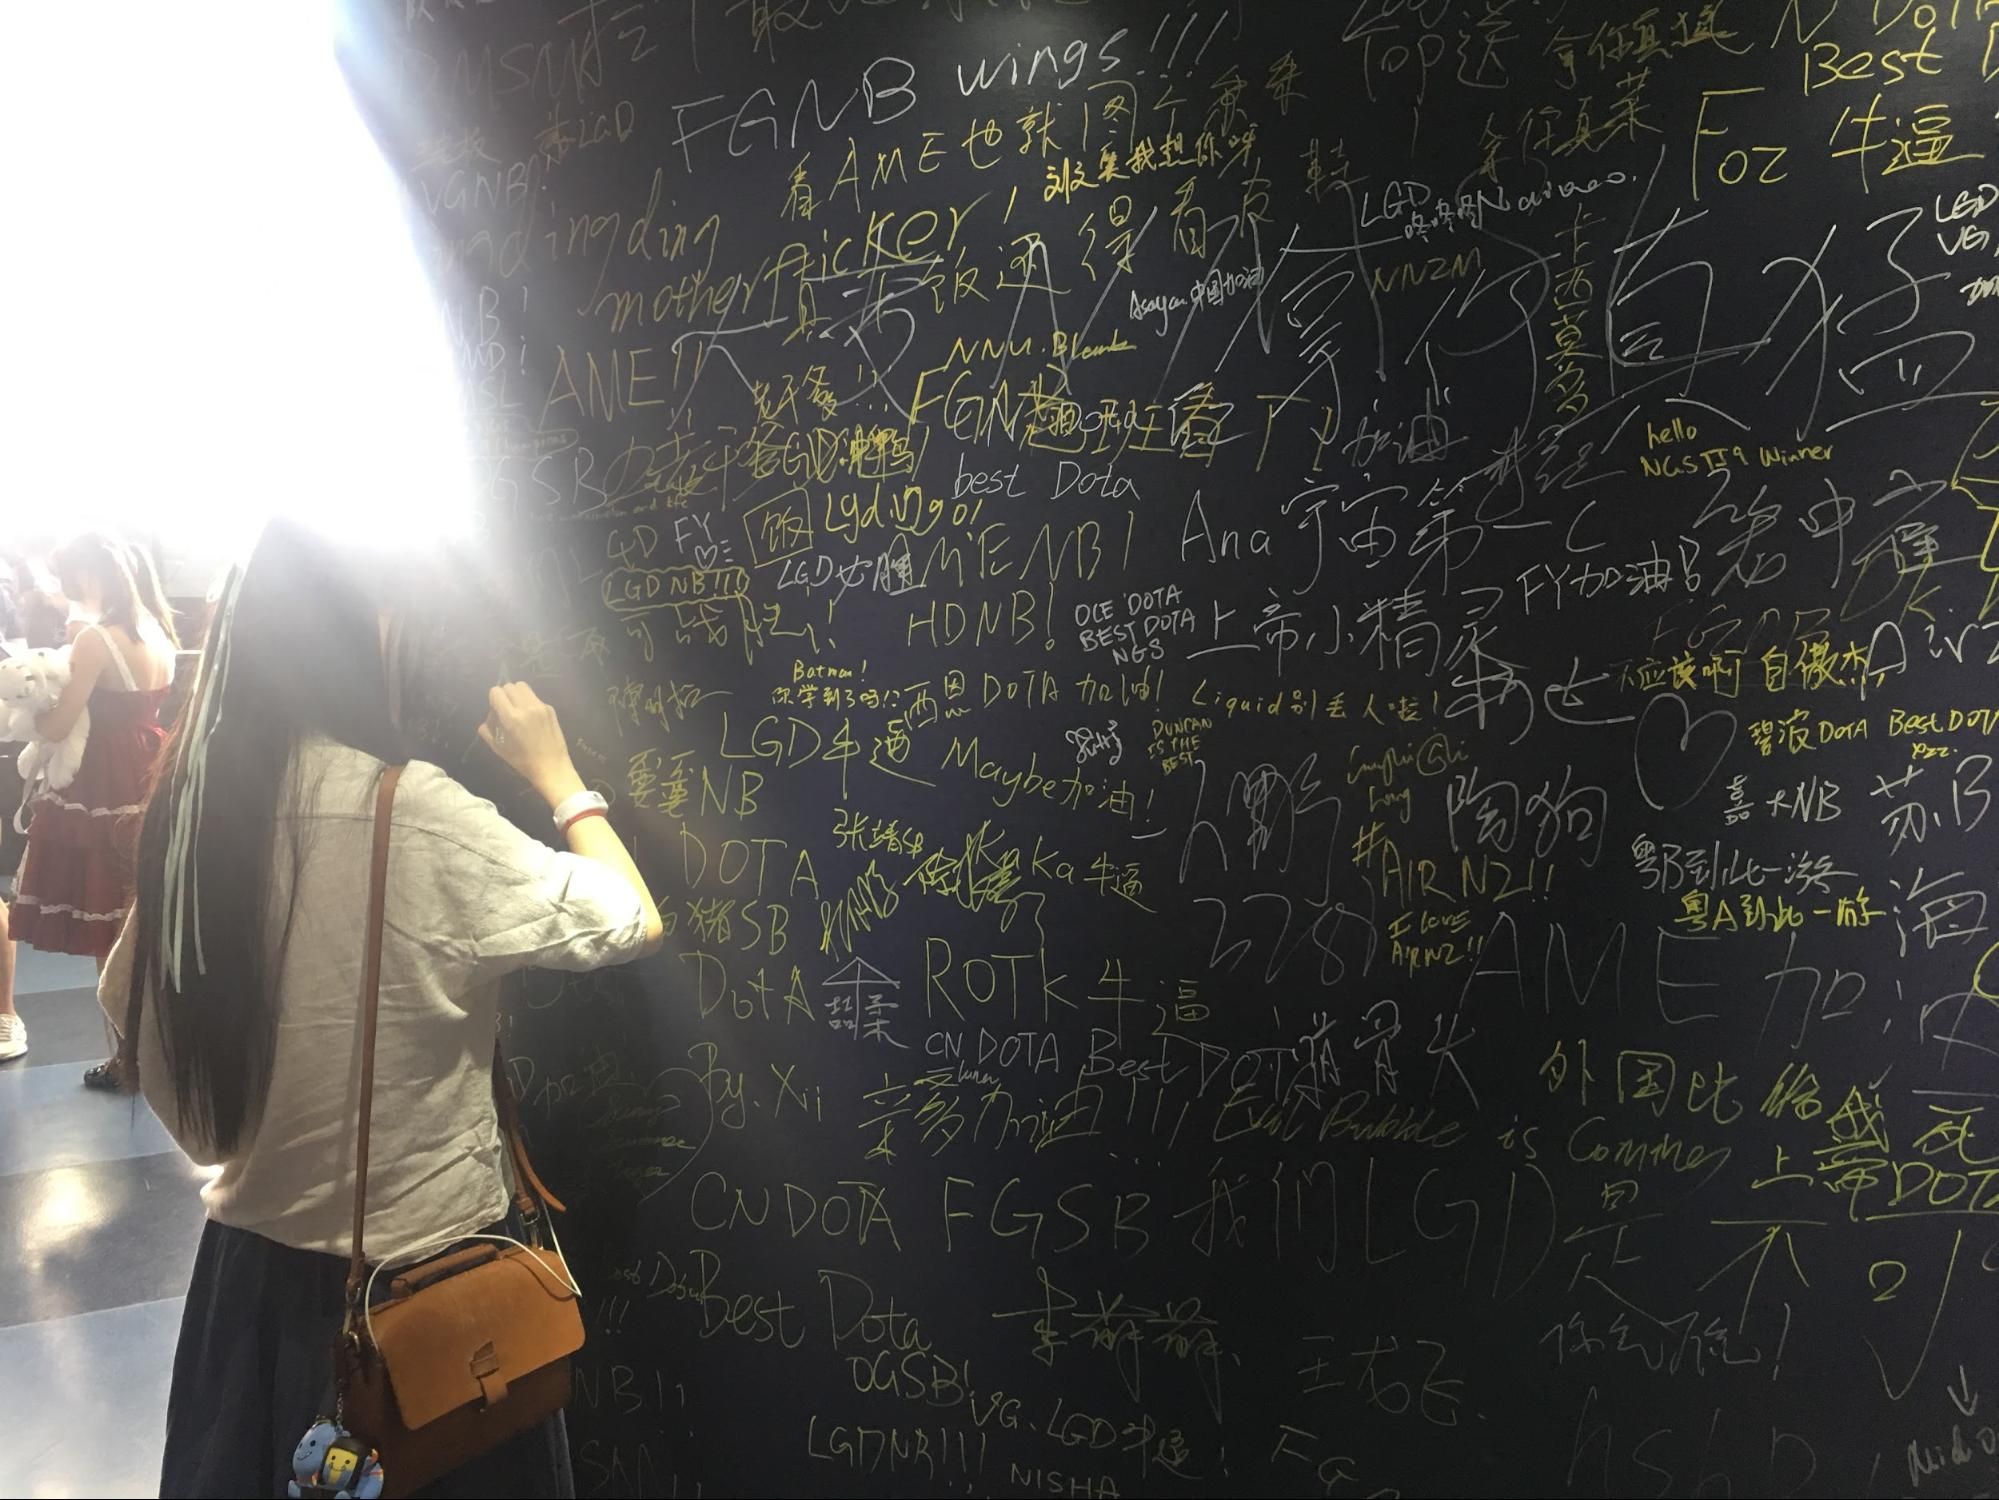 На этой стене фанаты оставляют автографы &mdash; других развлечений в холле нет